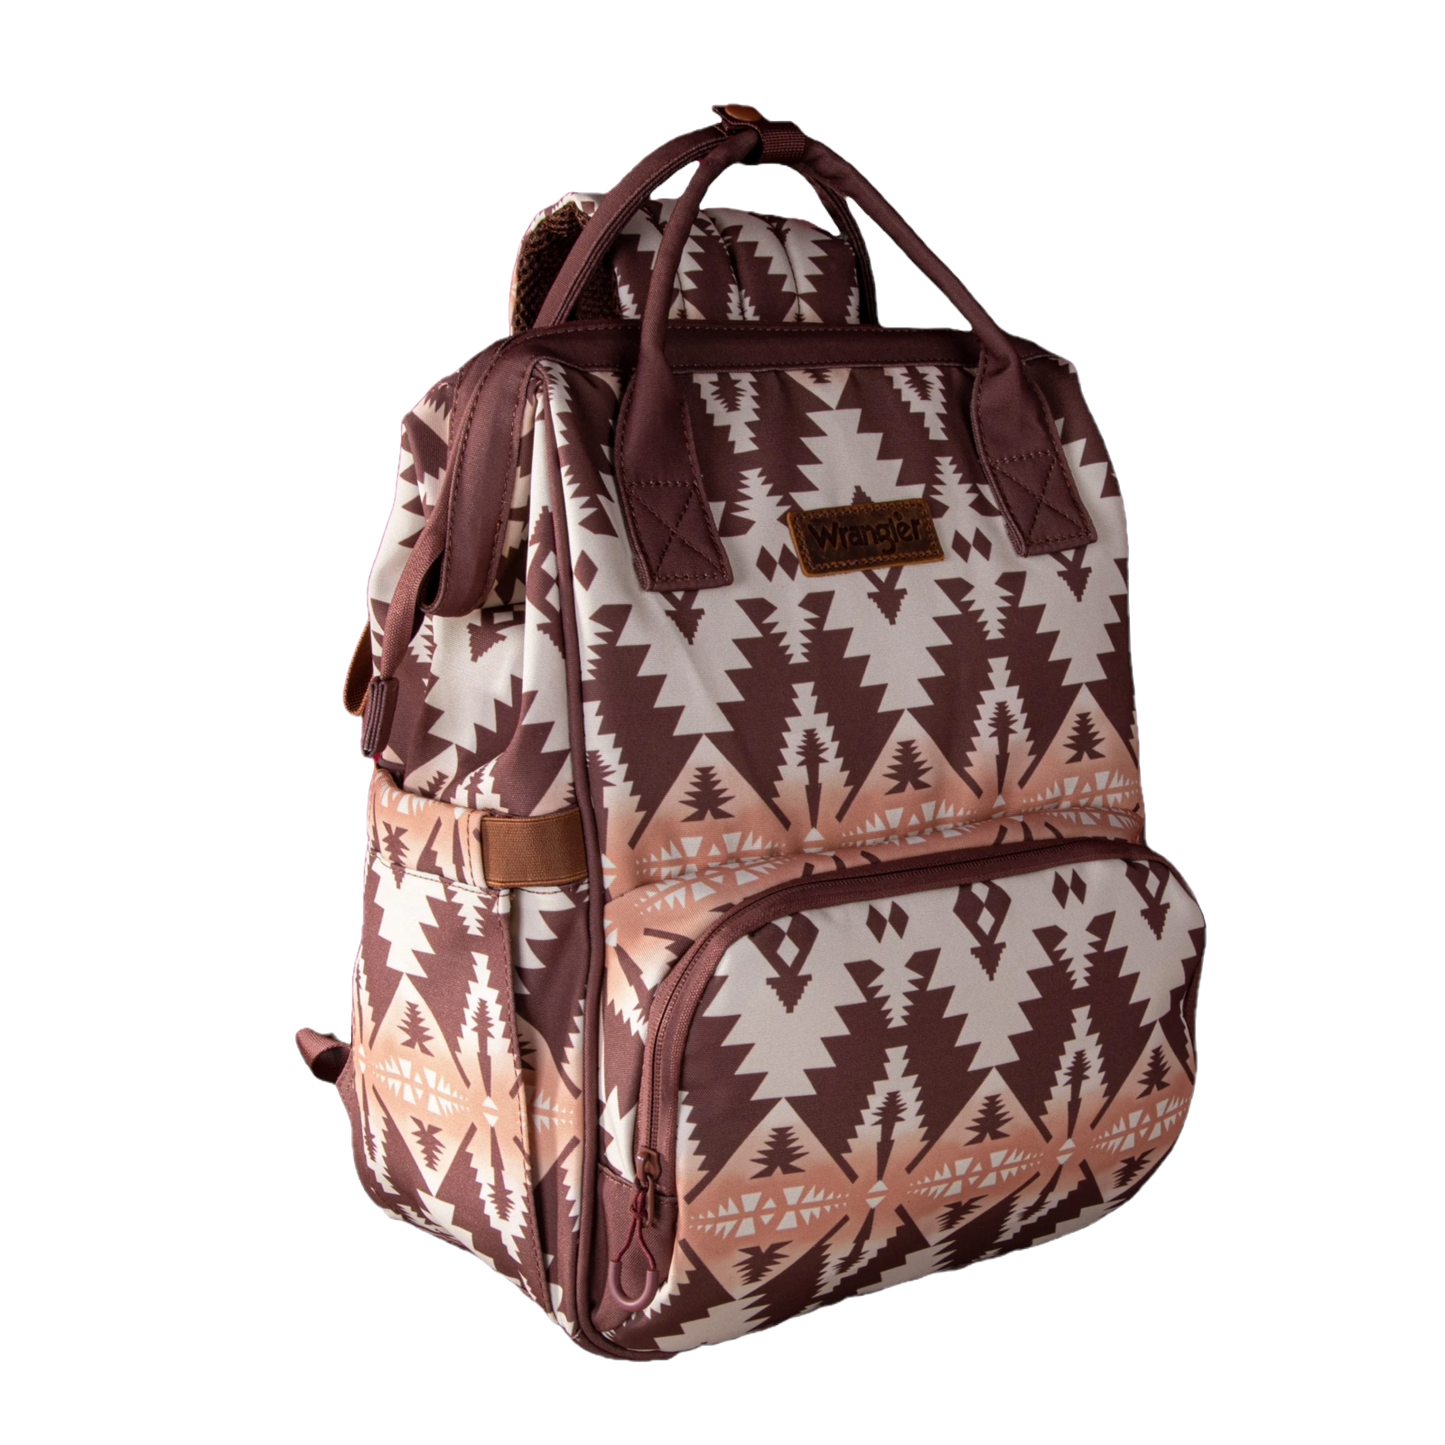 Wrangler Ladies Aztec Printed Brown Dual Sided BackpackWG2204-9110BR